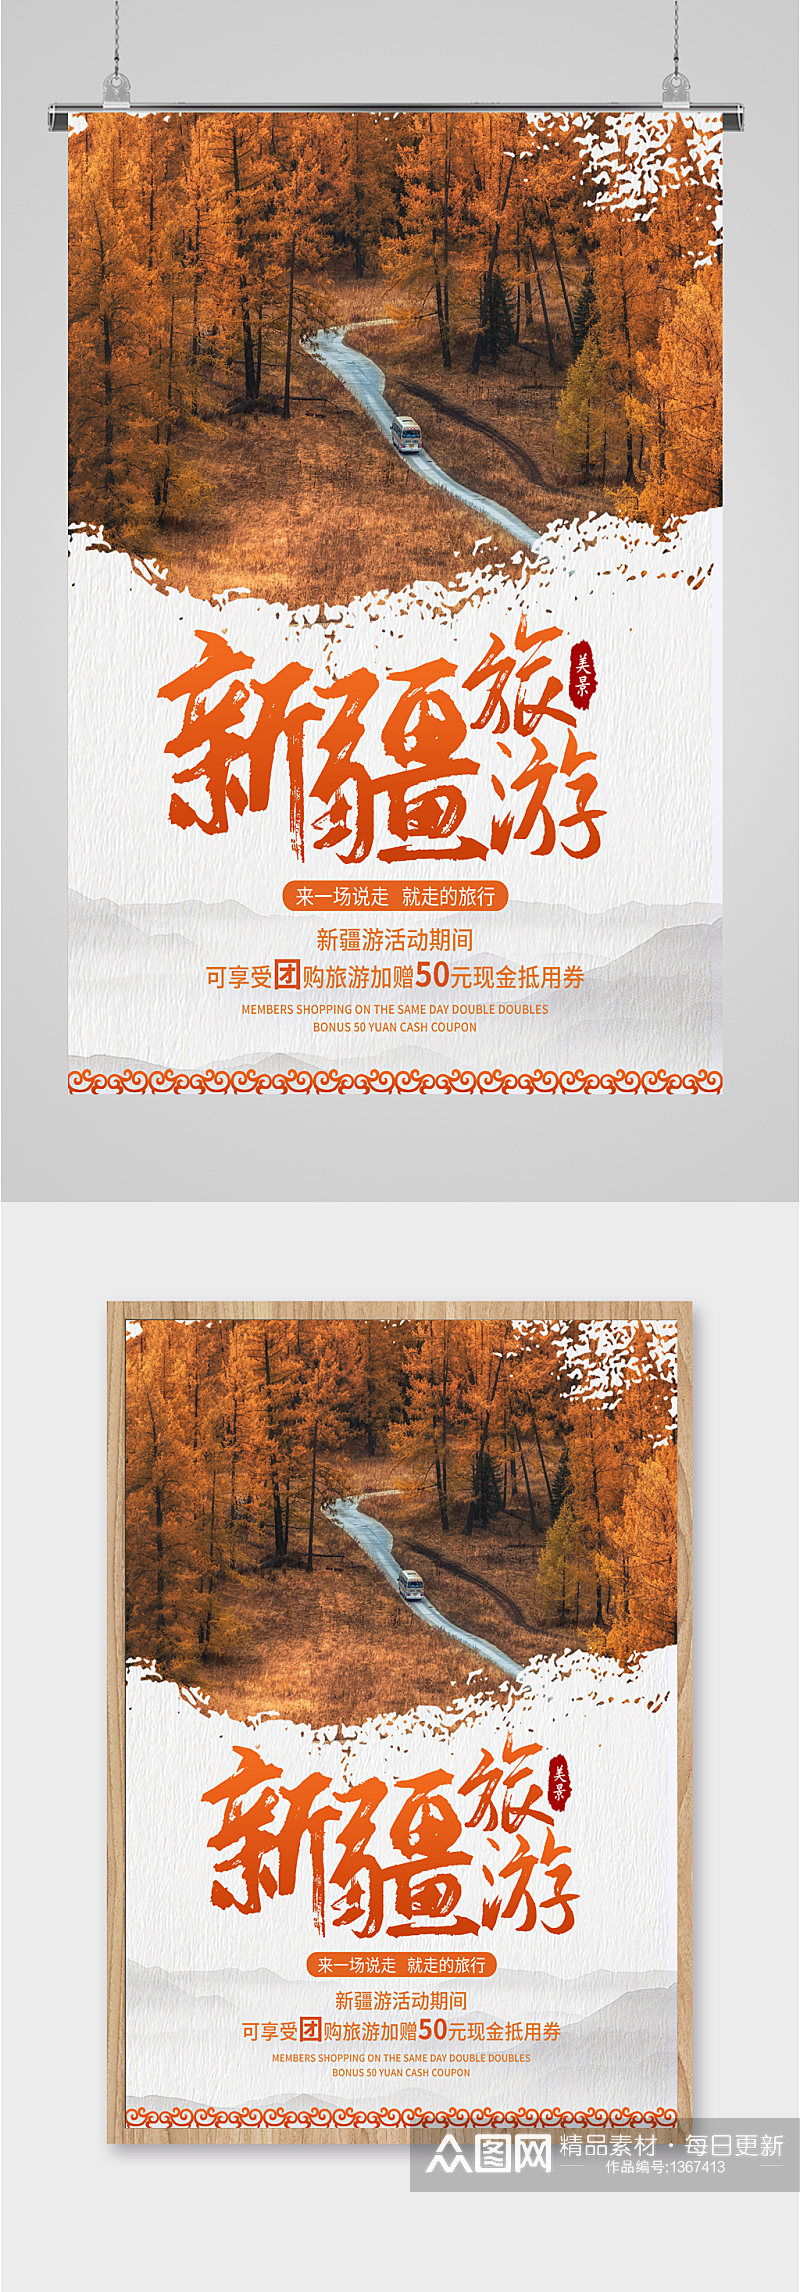 新疆旅游旅行社宣传海报素材